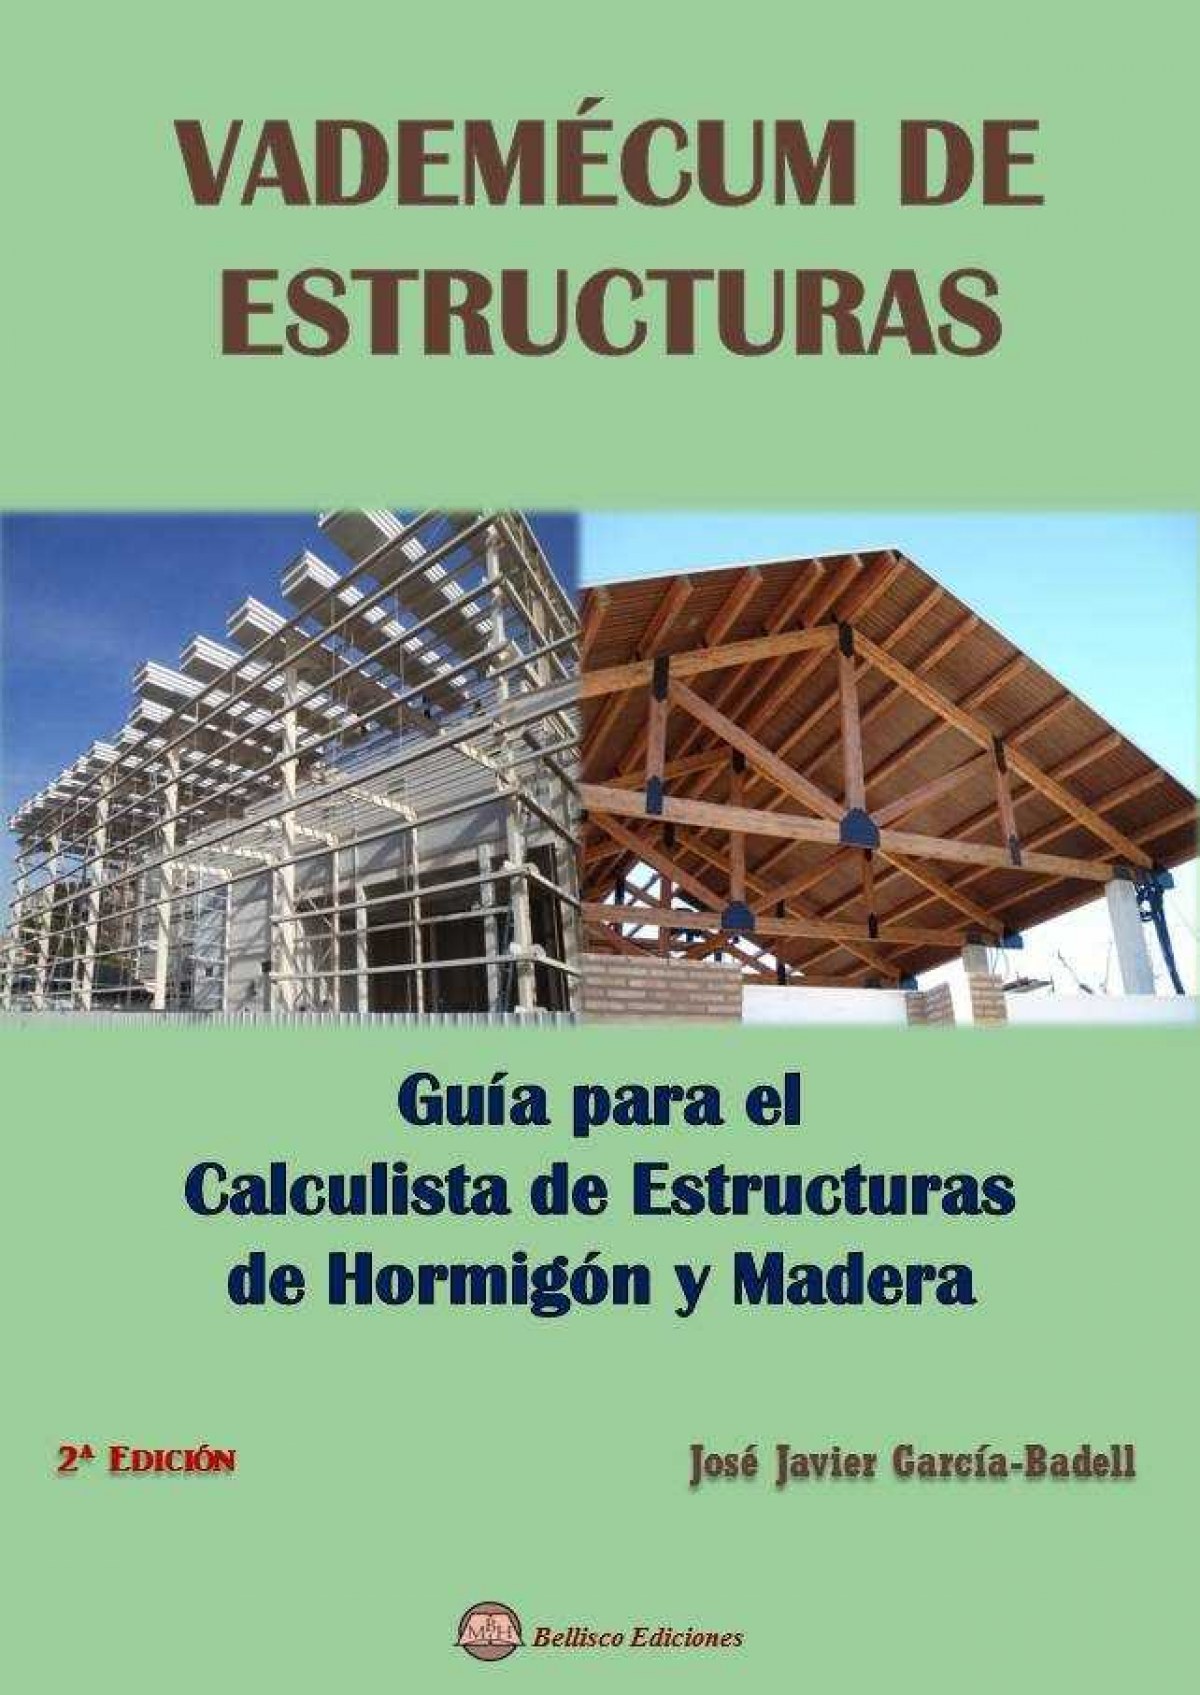 VADEMECUM DE ESTRUCTURAS Guía para el Calculista de Estructuras de Hor - García-Badell, José Javier